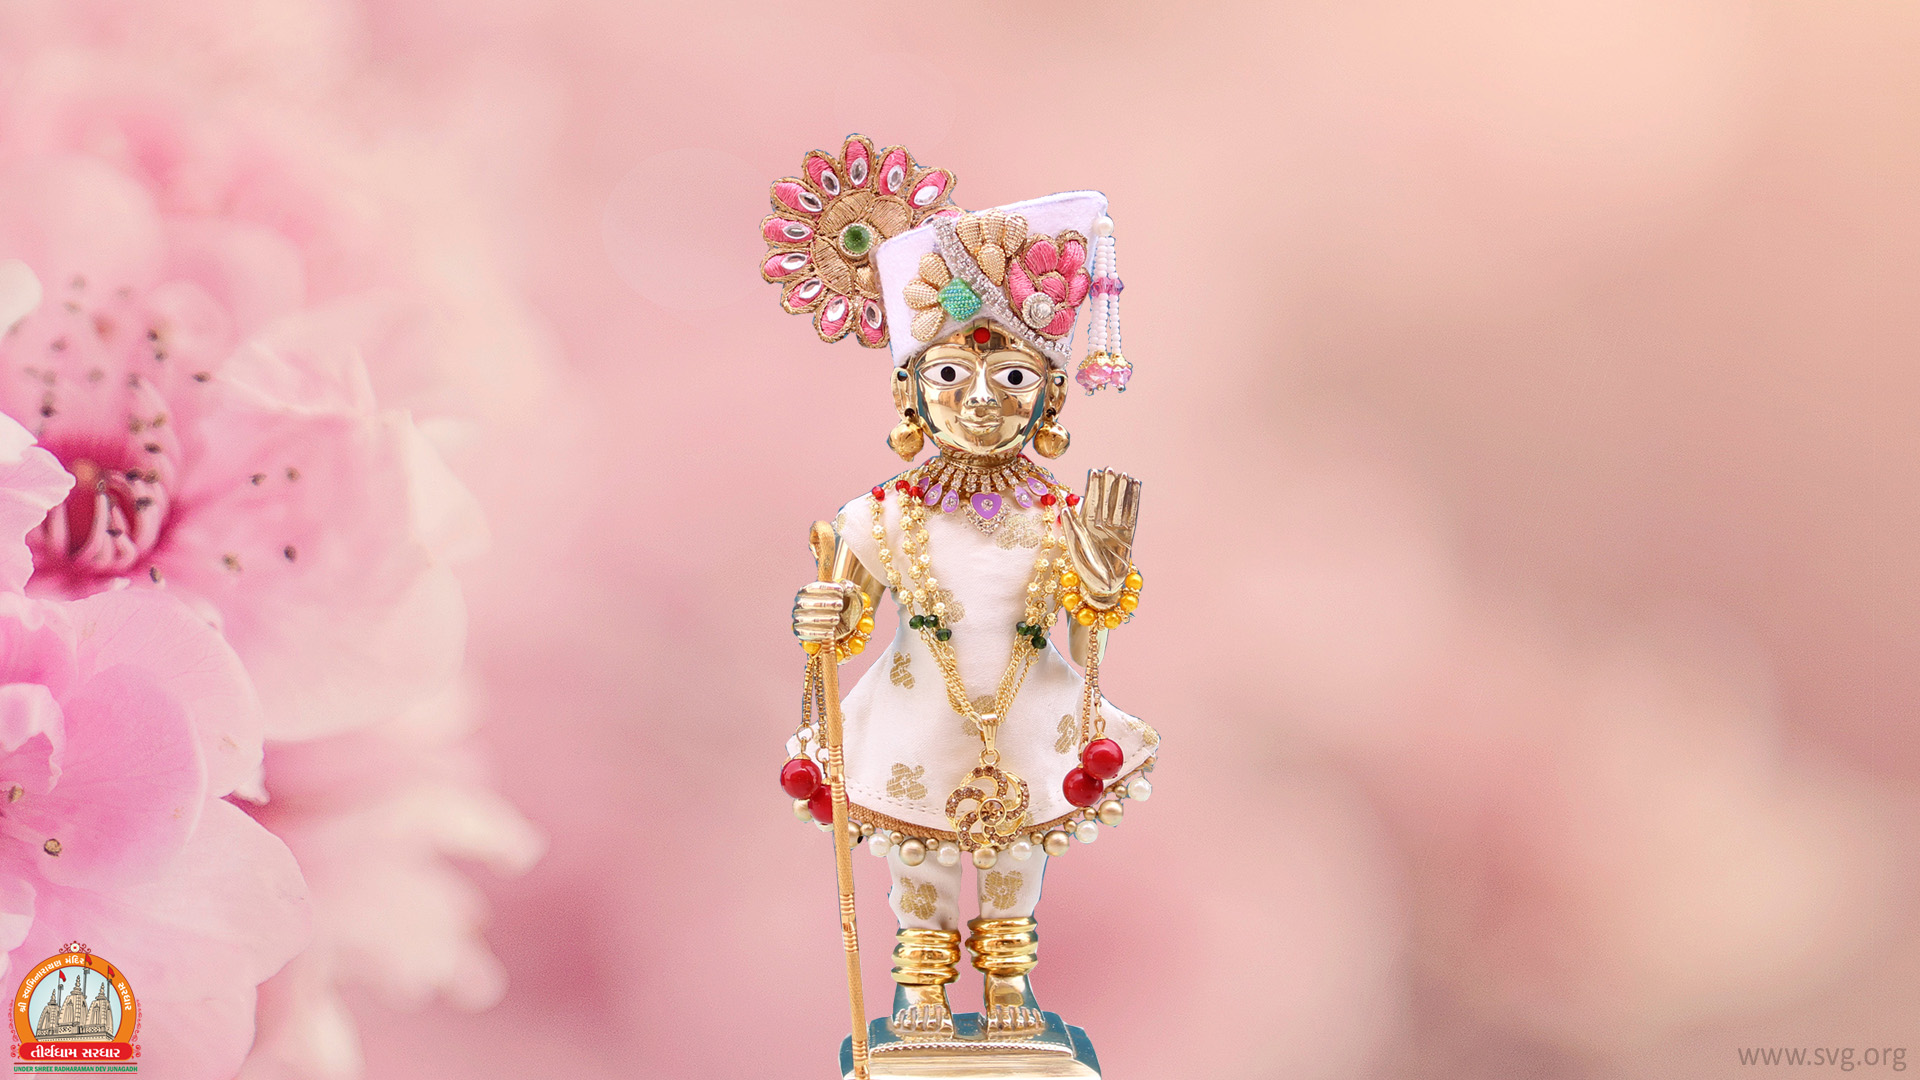 Swaminarayan Bhagwan Wallpaper - Desktop Photography , HD Wallpaper & Backgrounds